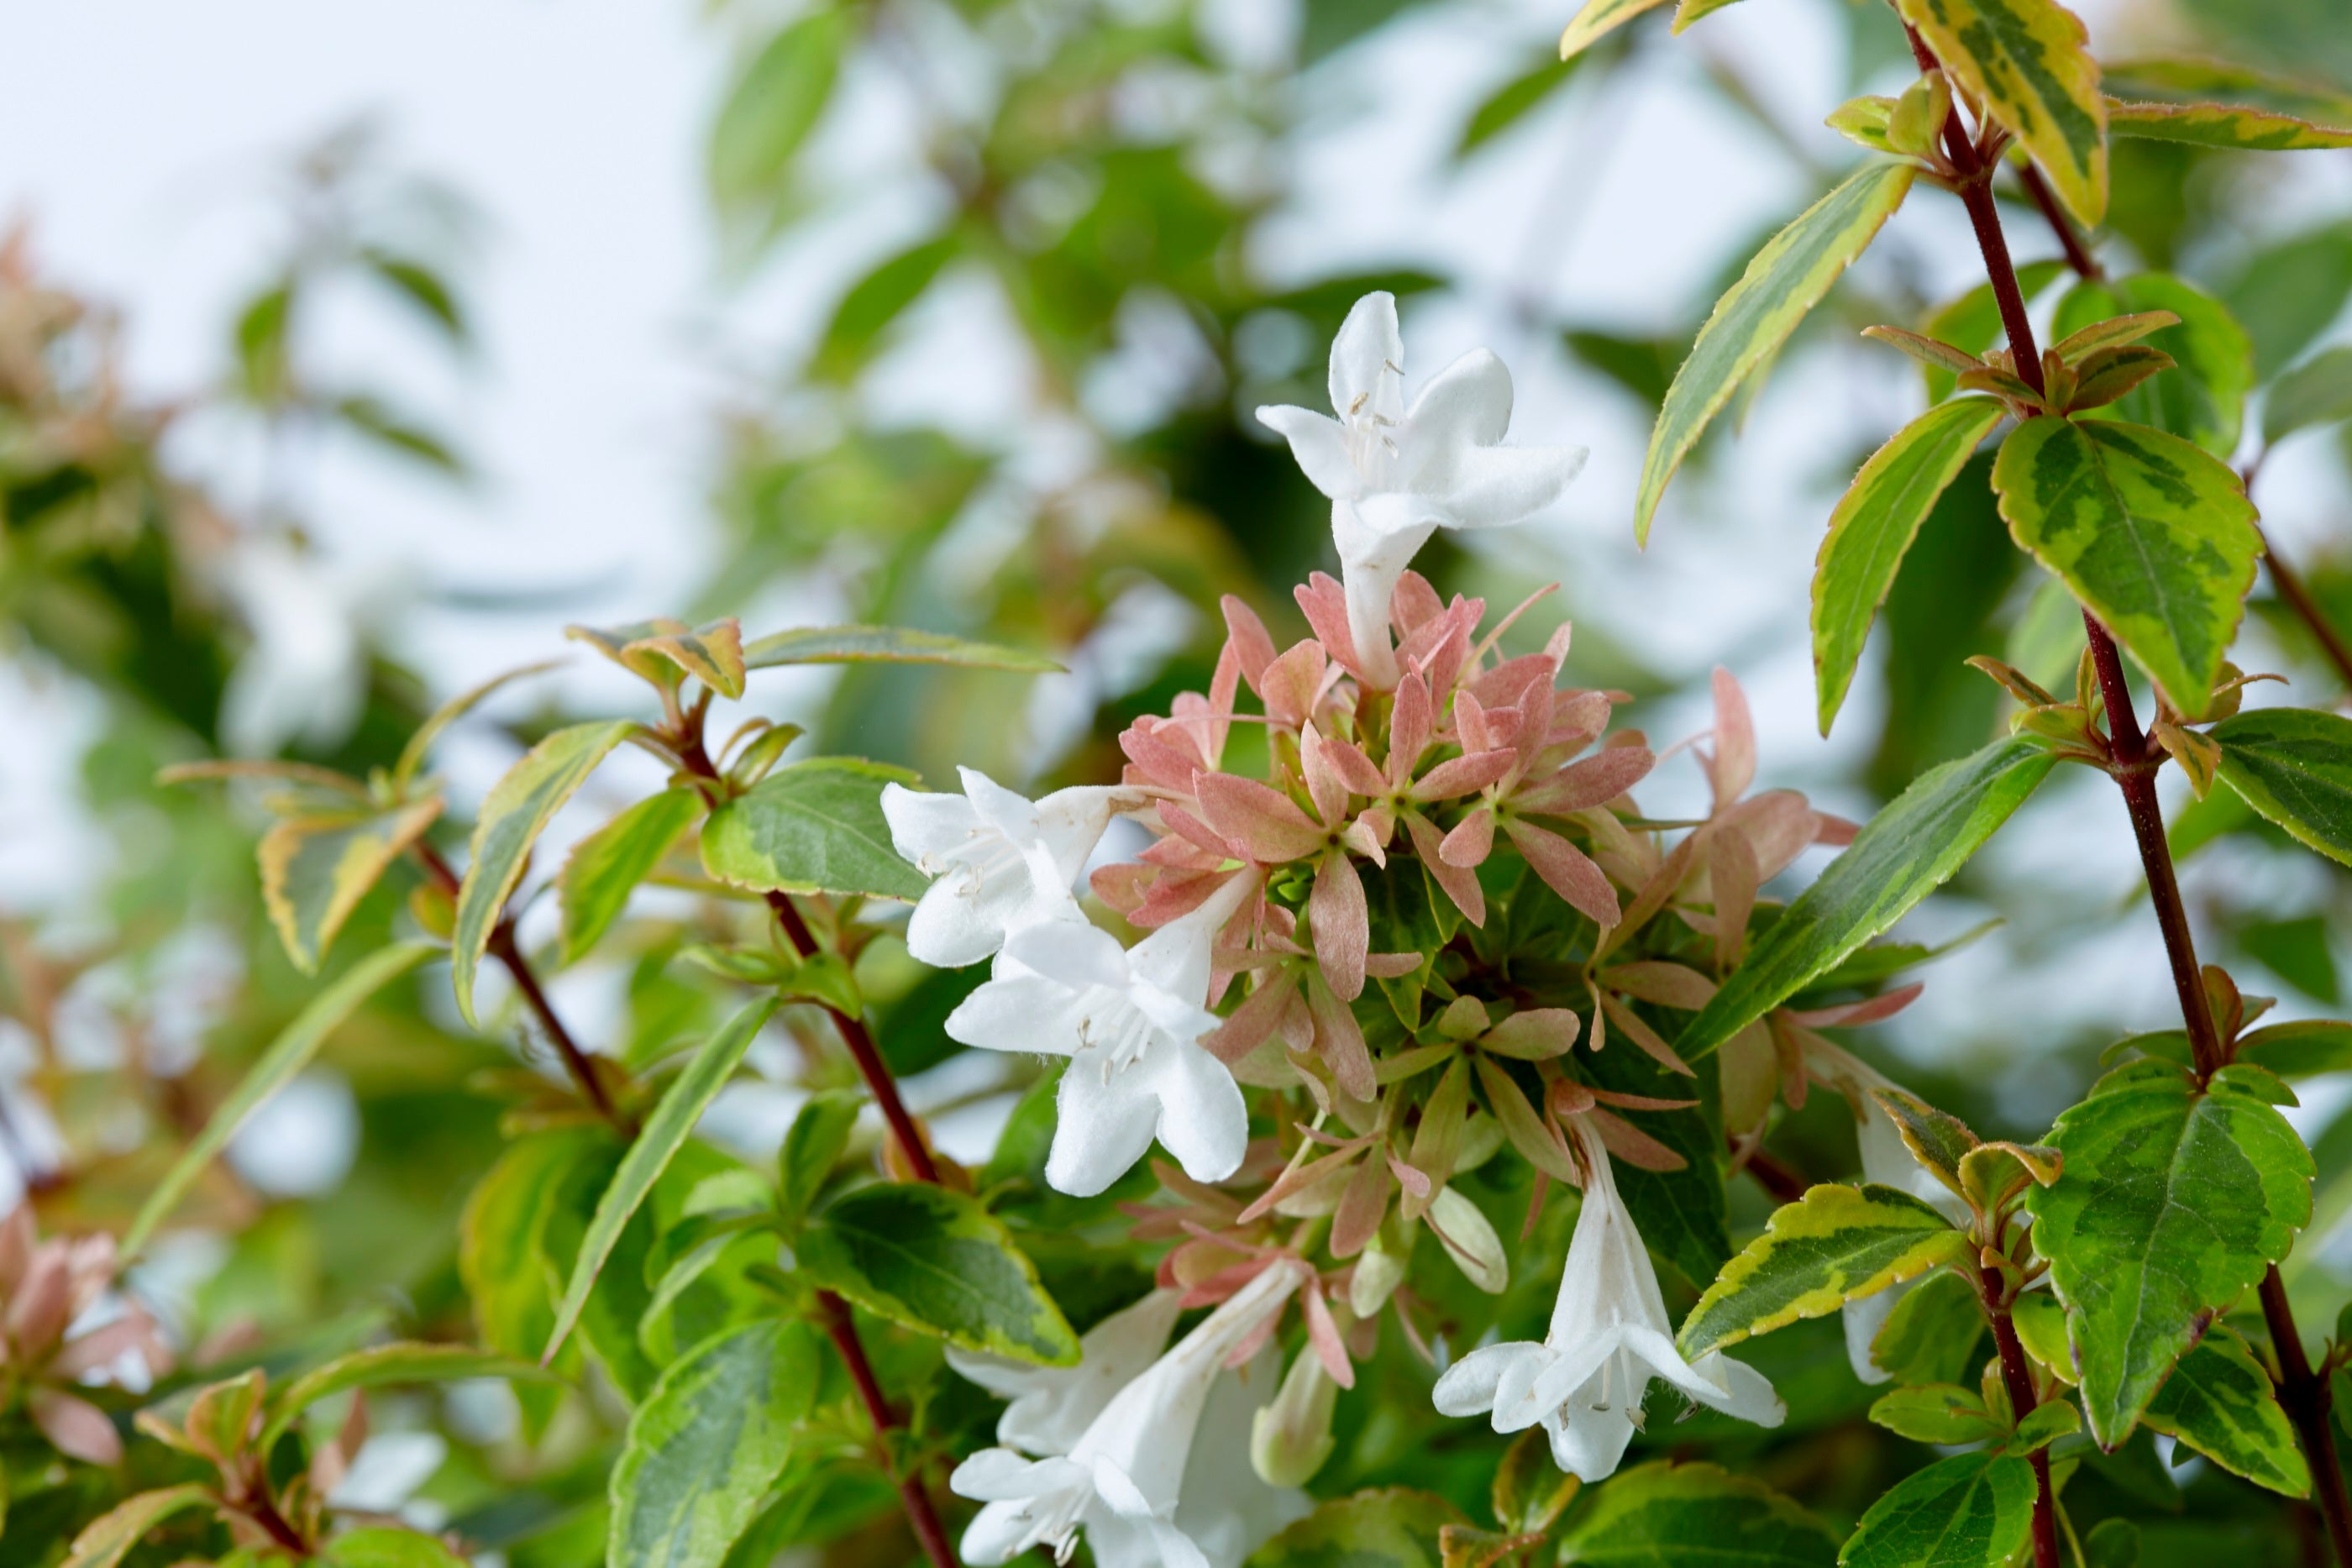 Kaleidoscope™ Abelia  Flowering Shrub with White Blooms - 2 Gallon